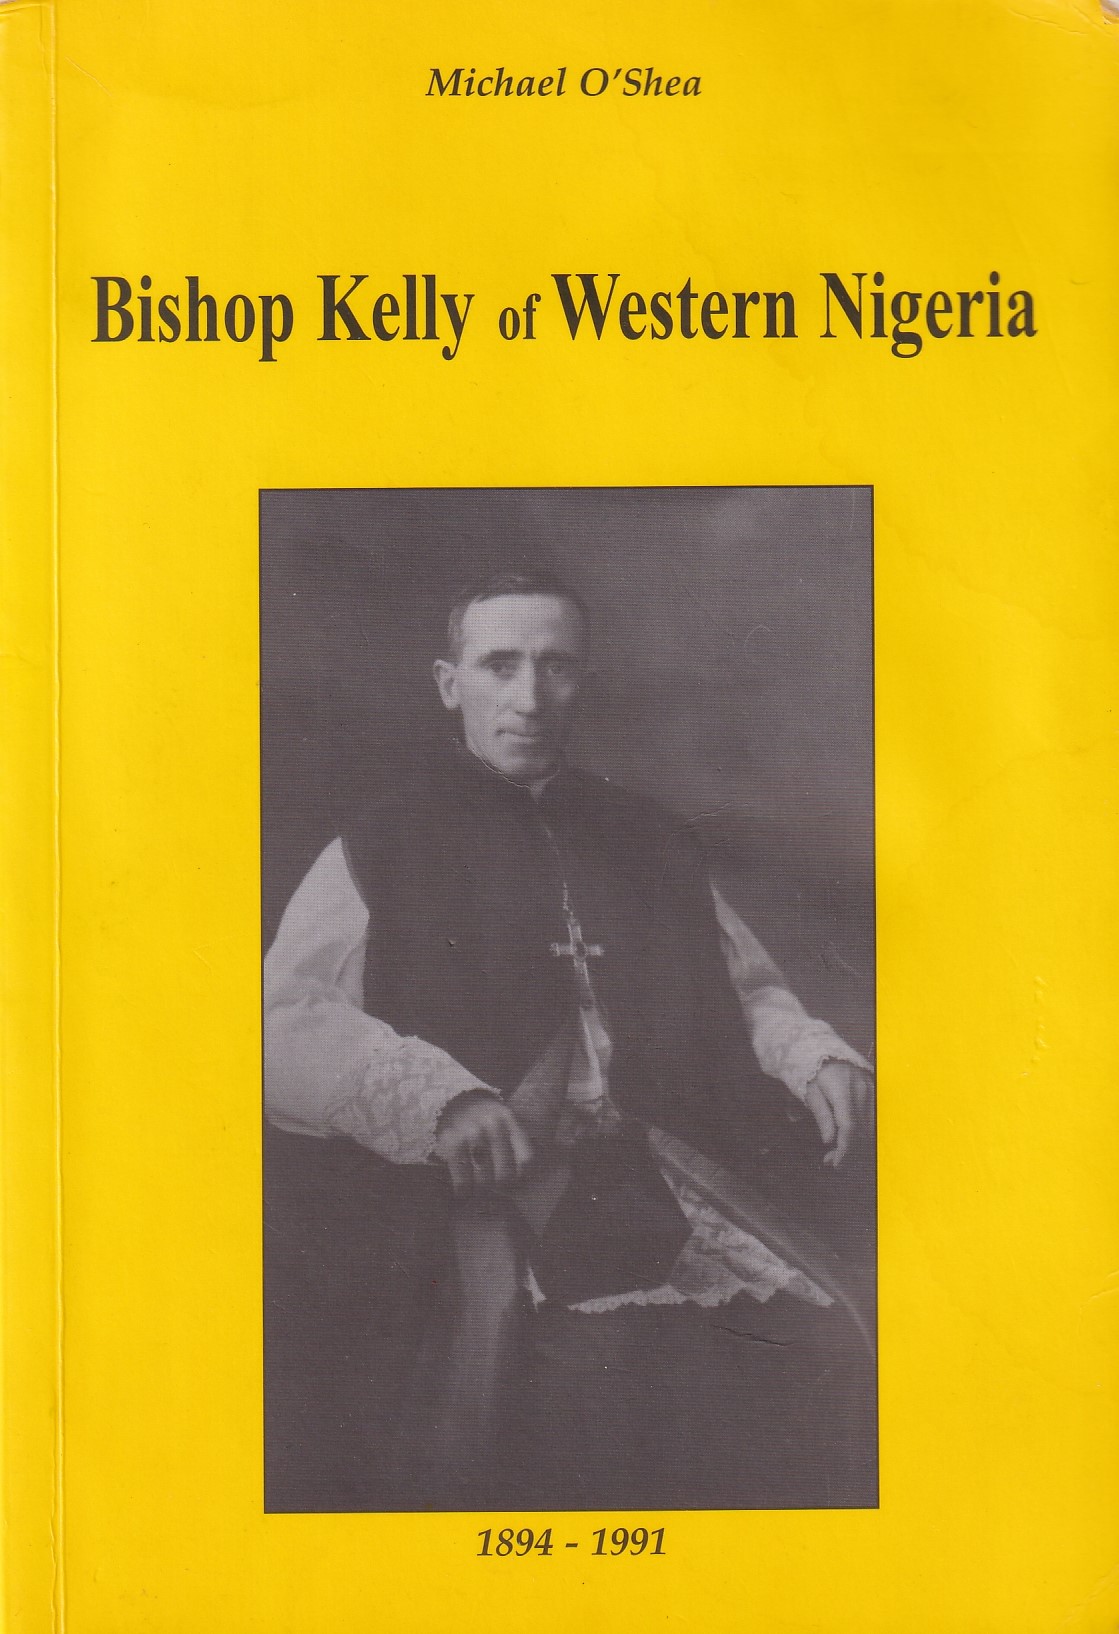 Bishop Kelly of Western Nigeria by O'Shea, Michael